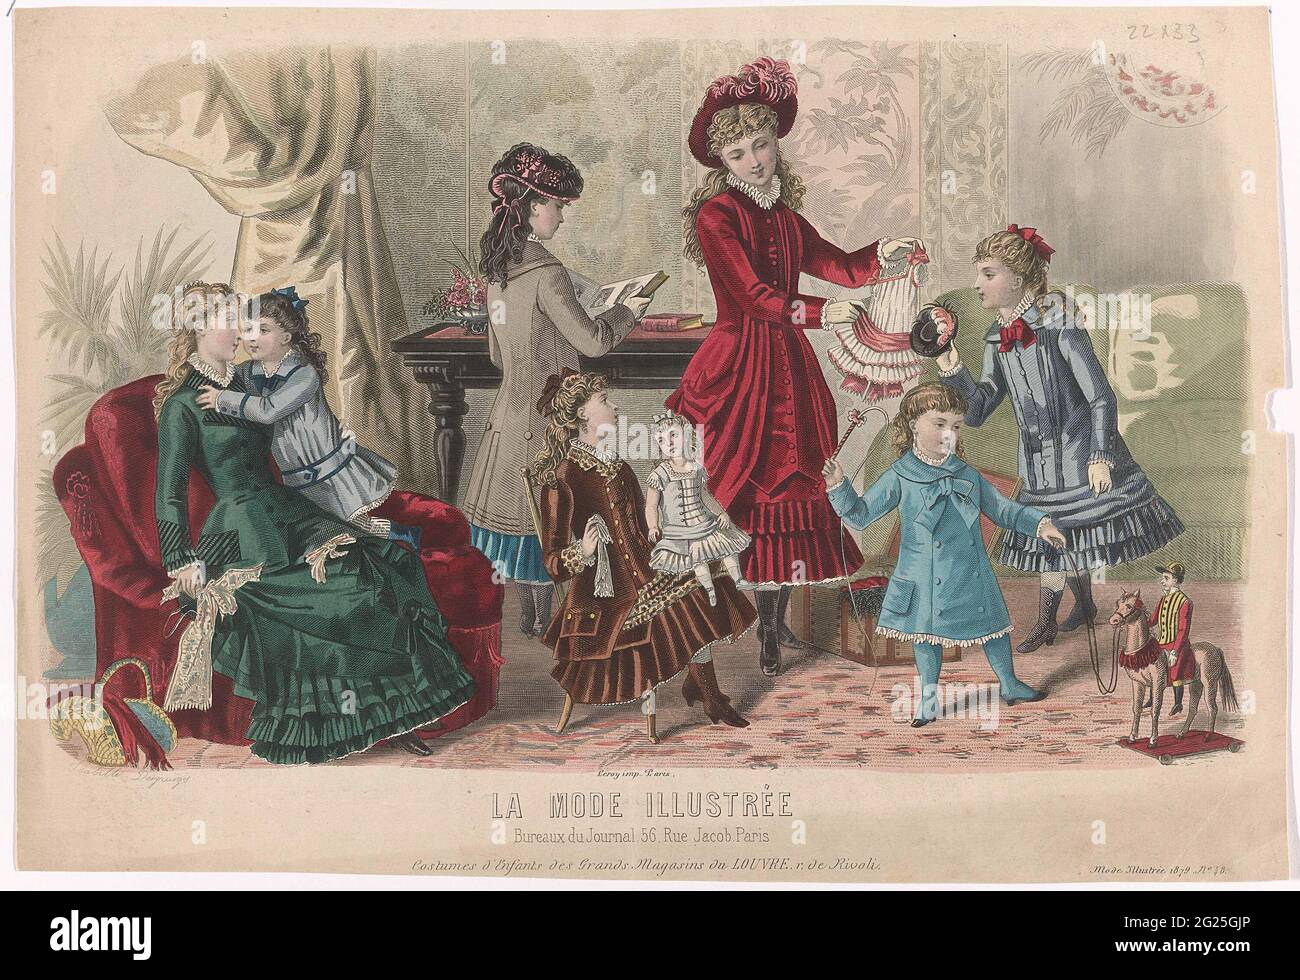 La Fashion Illustrée, 1879, n. 48: Costumi d'Enfants (...). Sette ragazze  all'interno, che giocano con una bambola, vestiti di bambola e cavallo da  poppa. Secondo la didascalia, l'abbigliamento per bambini del grande